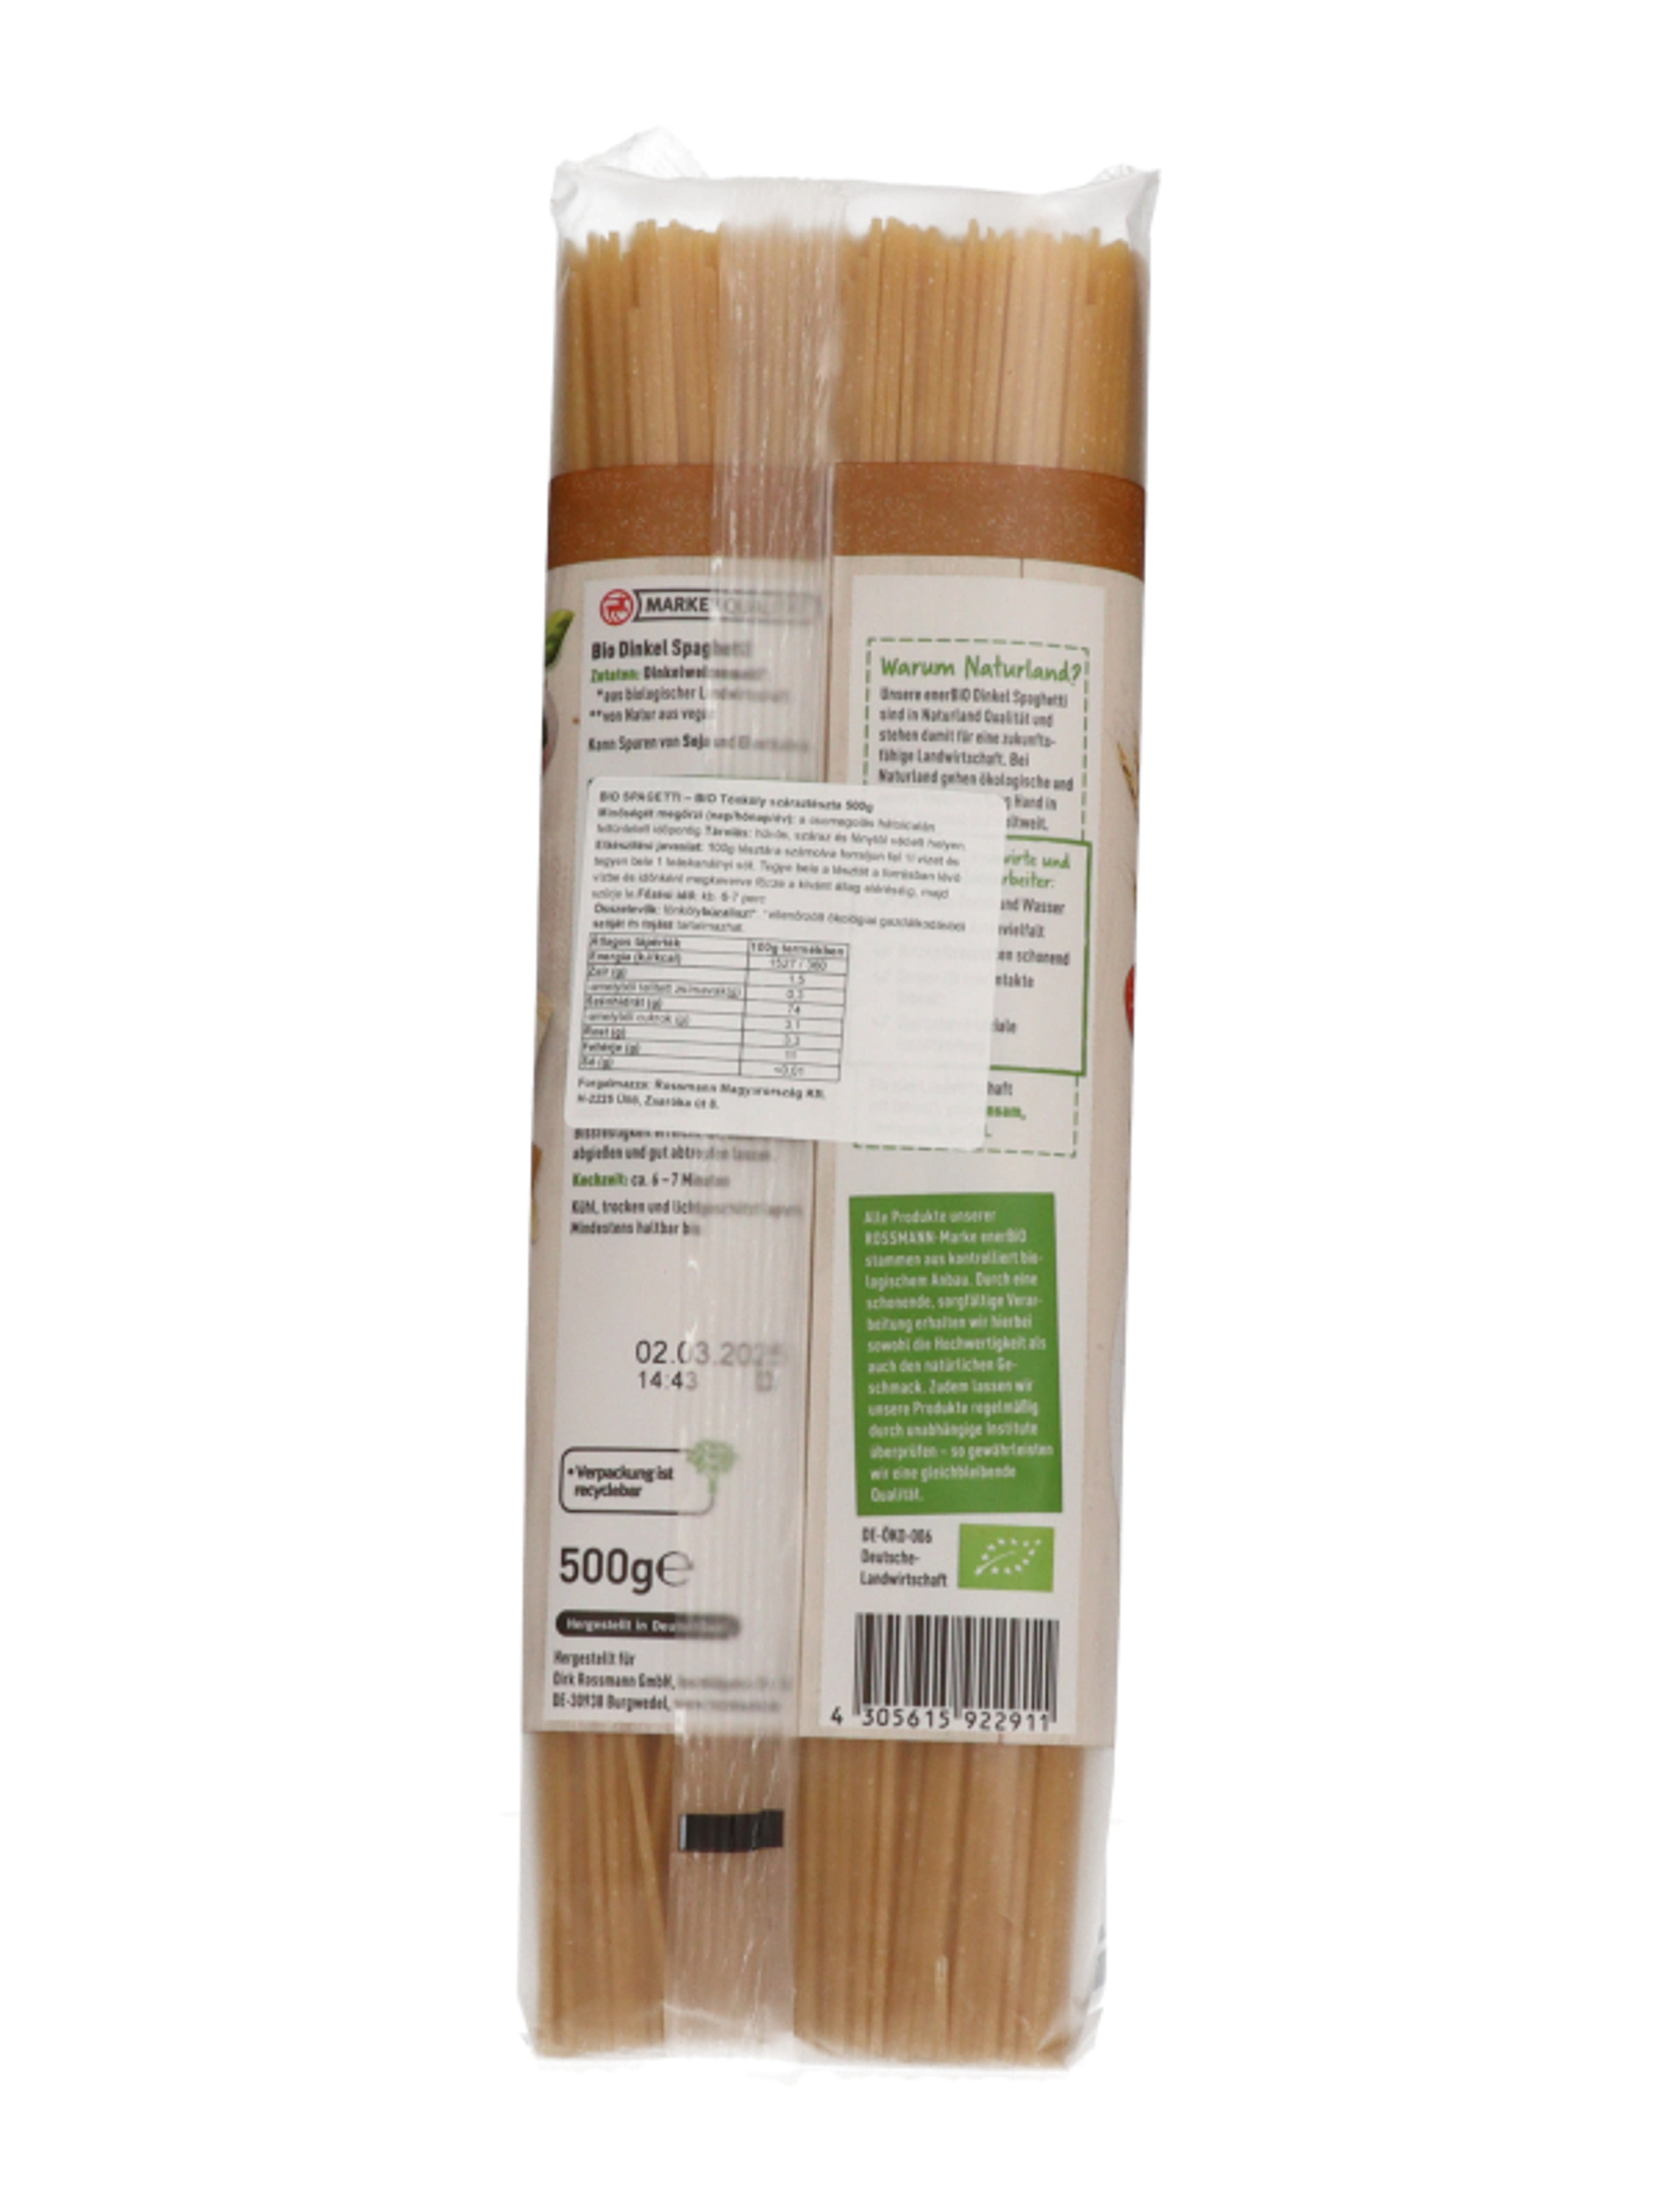 Ener-Bio Tönköly spagetti száraztészta - 500 g-4